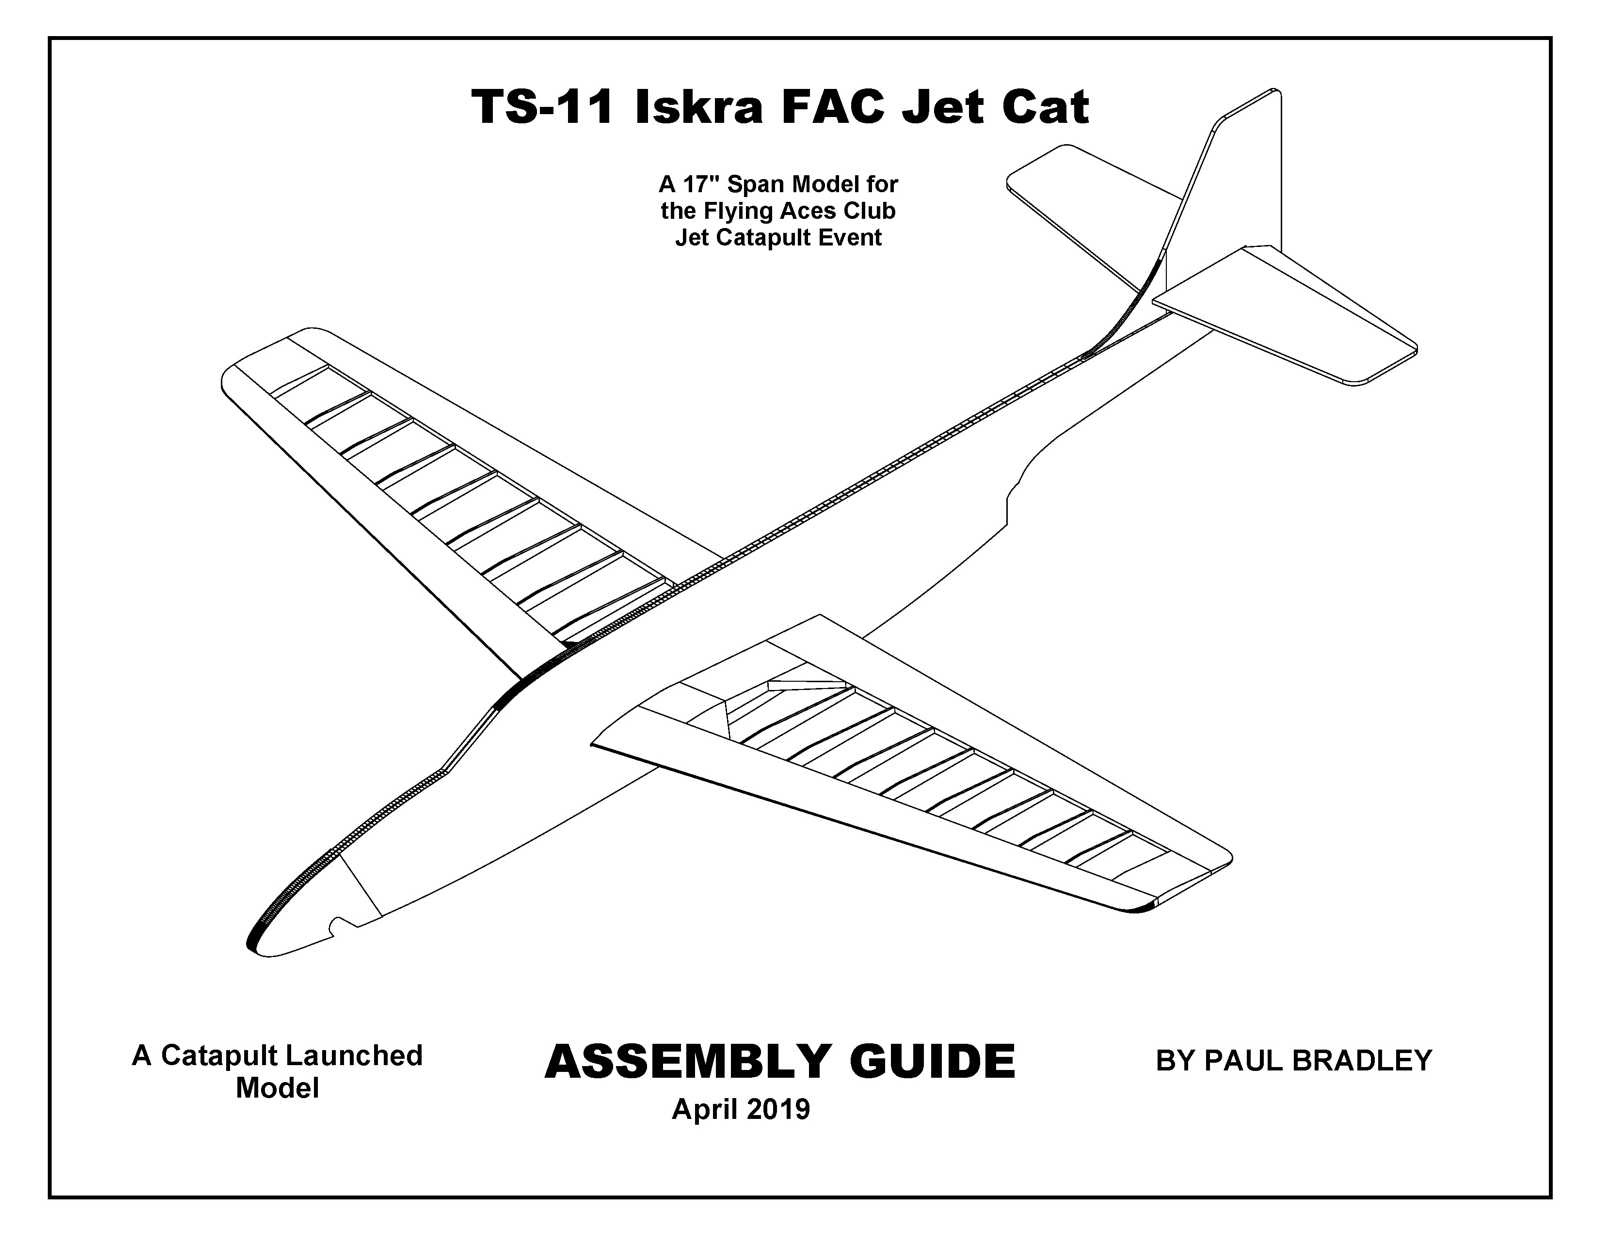 https://0201.nccdn.net/4_2/000/000/03f/ac7/TS-11-Iskra-Jet-Cat-Assembly-Guide-1600x1236.jpg